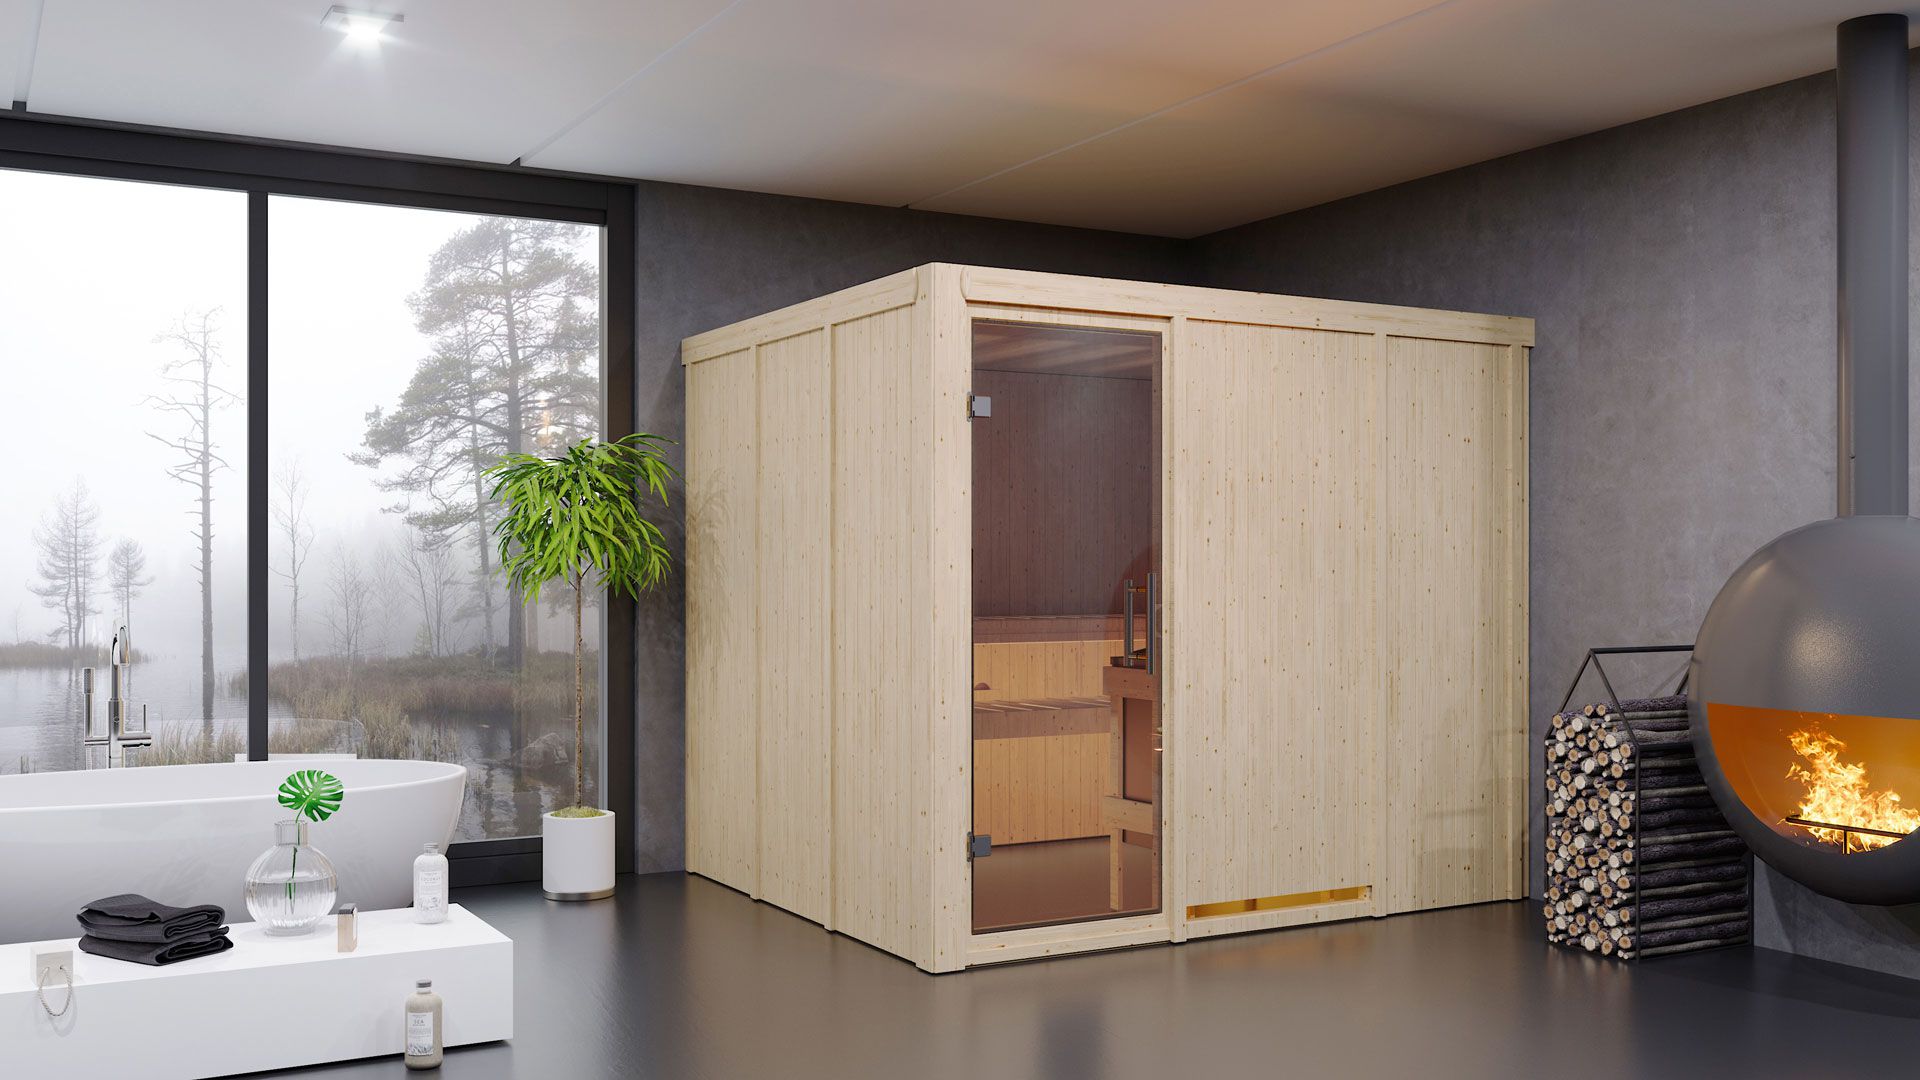 Sauna "Toivo" SET met heldere glazen deur & kachel BIO 9 kW - 231 x 196 x 198 cm (B x D x H)